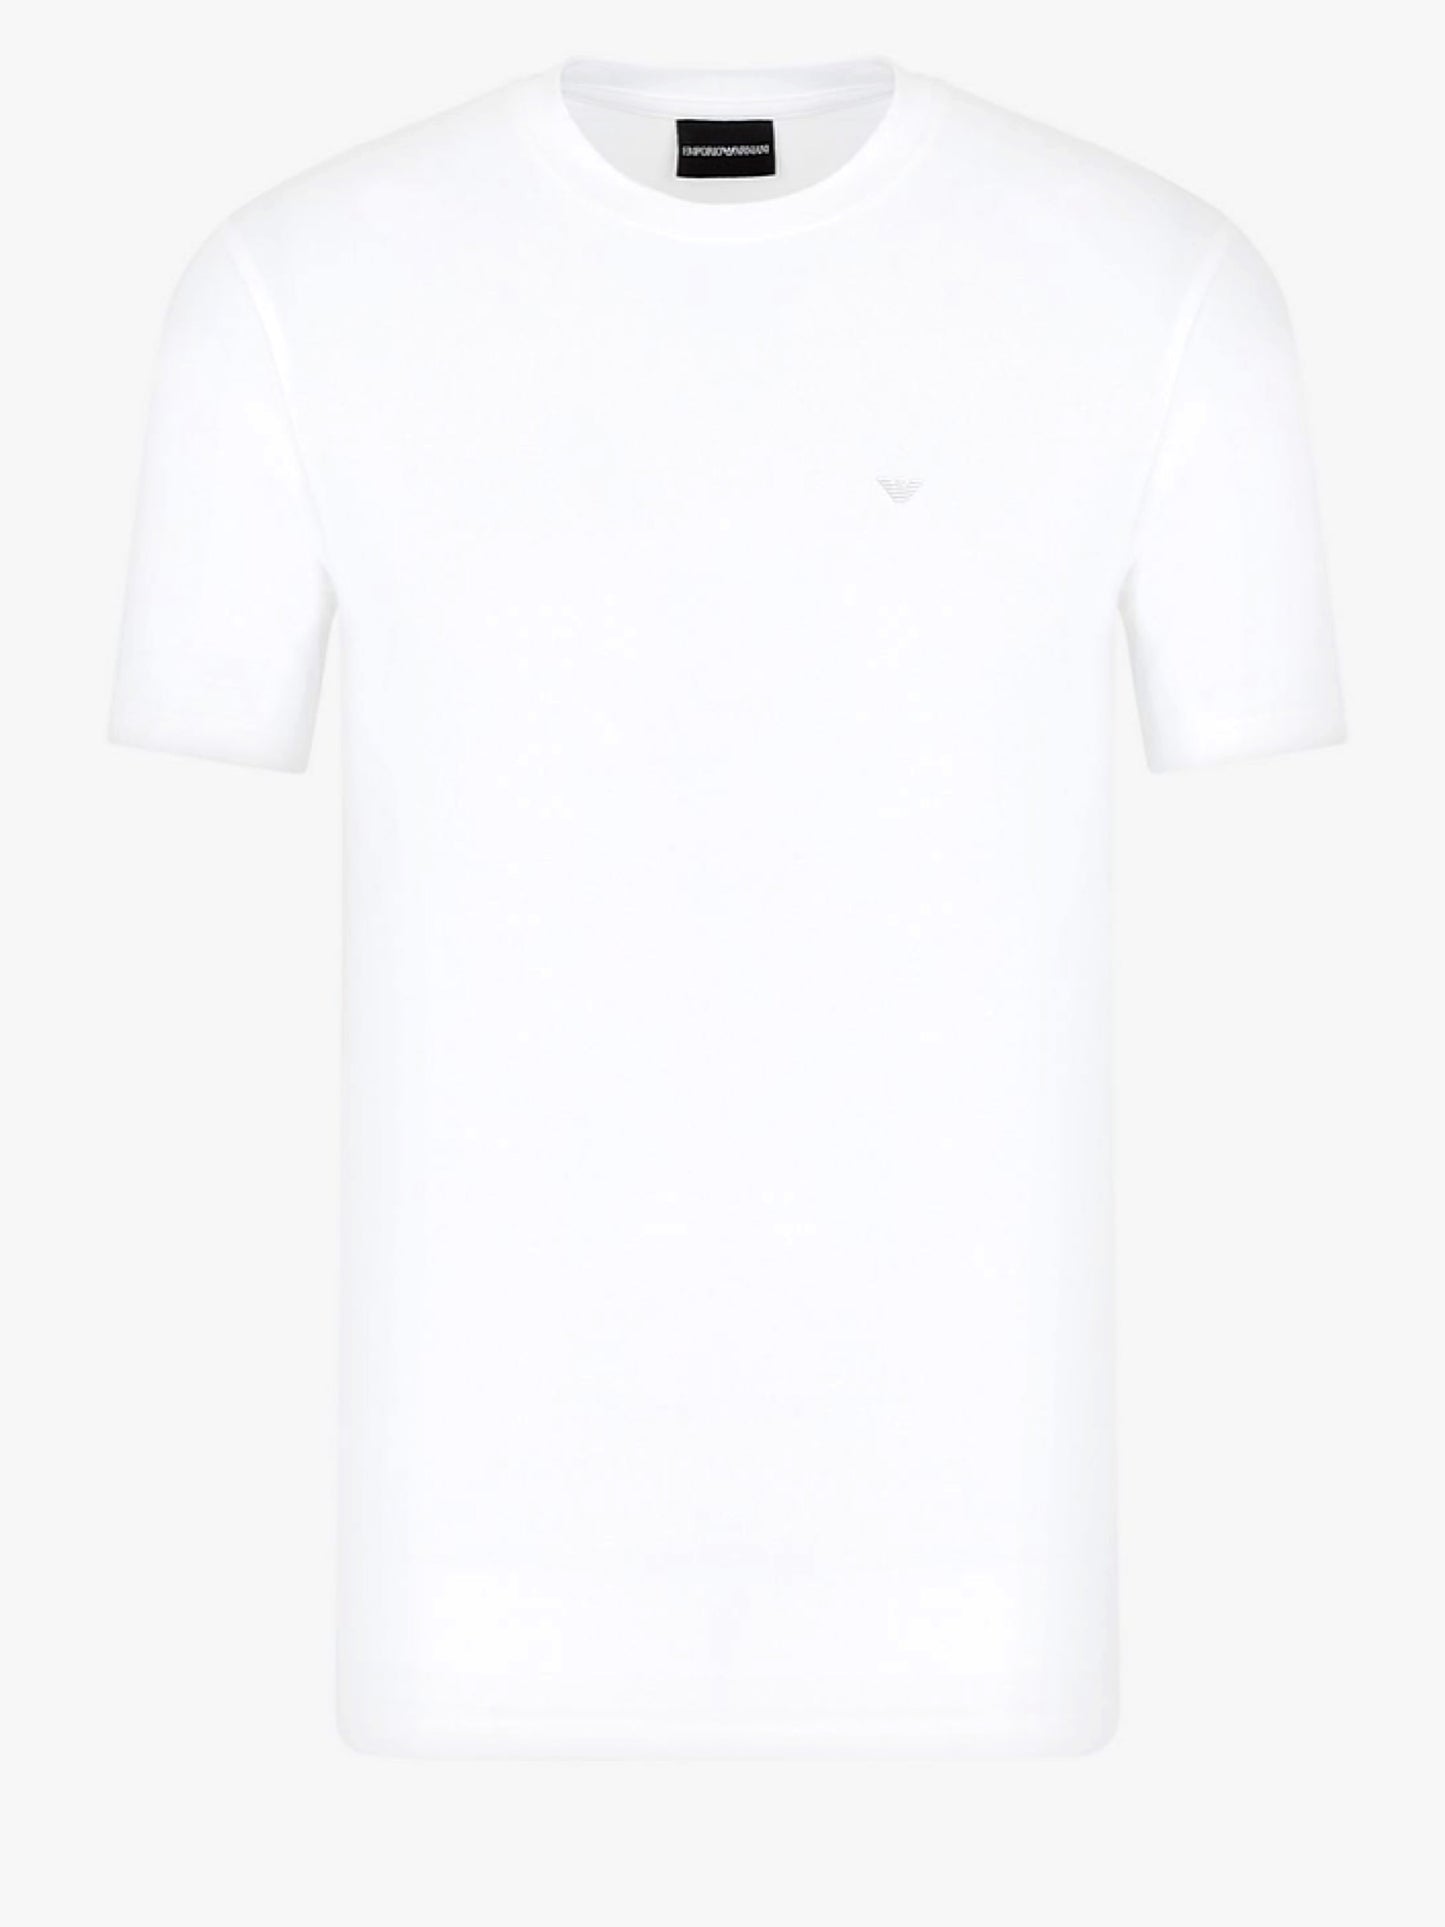 T-shirt Emporio Armani in cotone elasticizzato